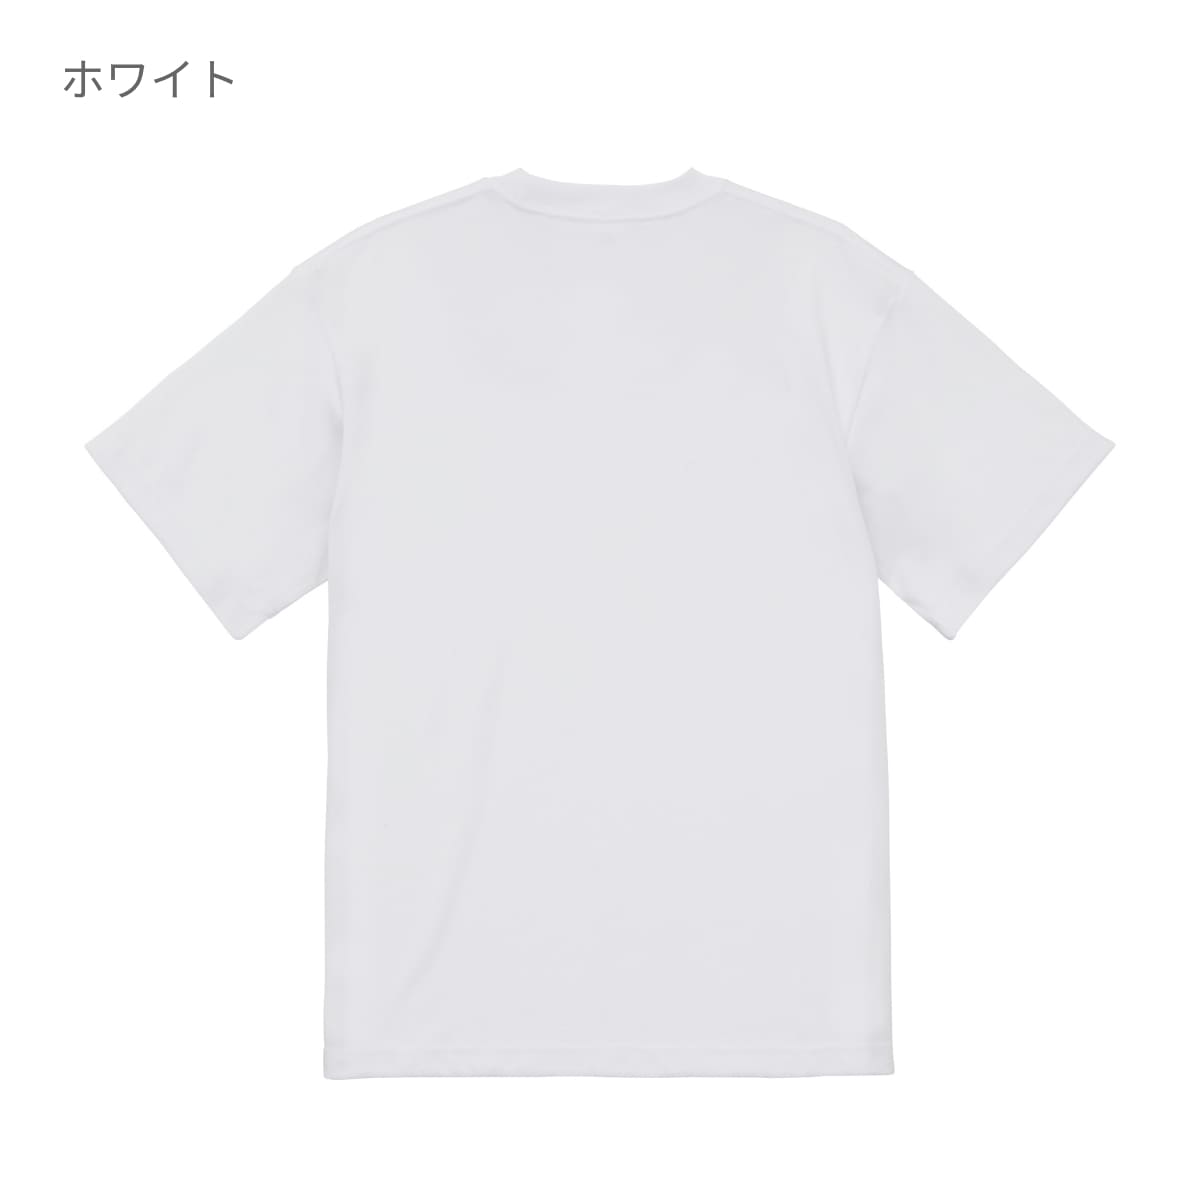 5.3オンス T/C バーサタイル Tシャツ | ビッグサイズ | 1枚 | 5888-01 | ネイビー